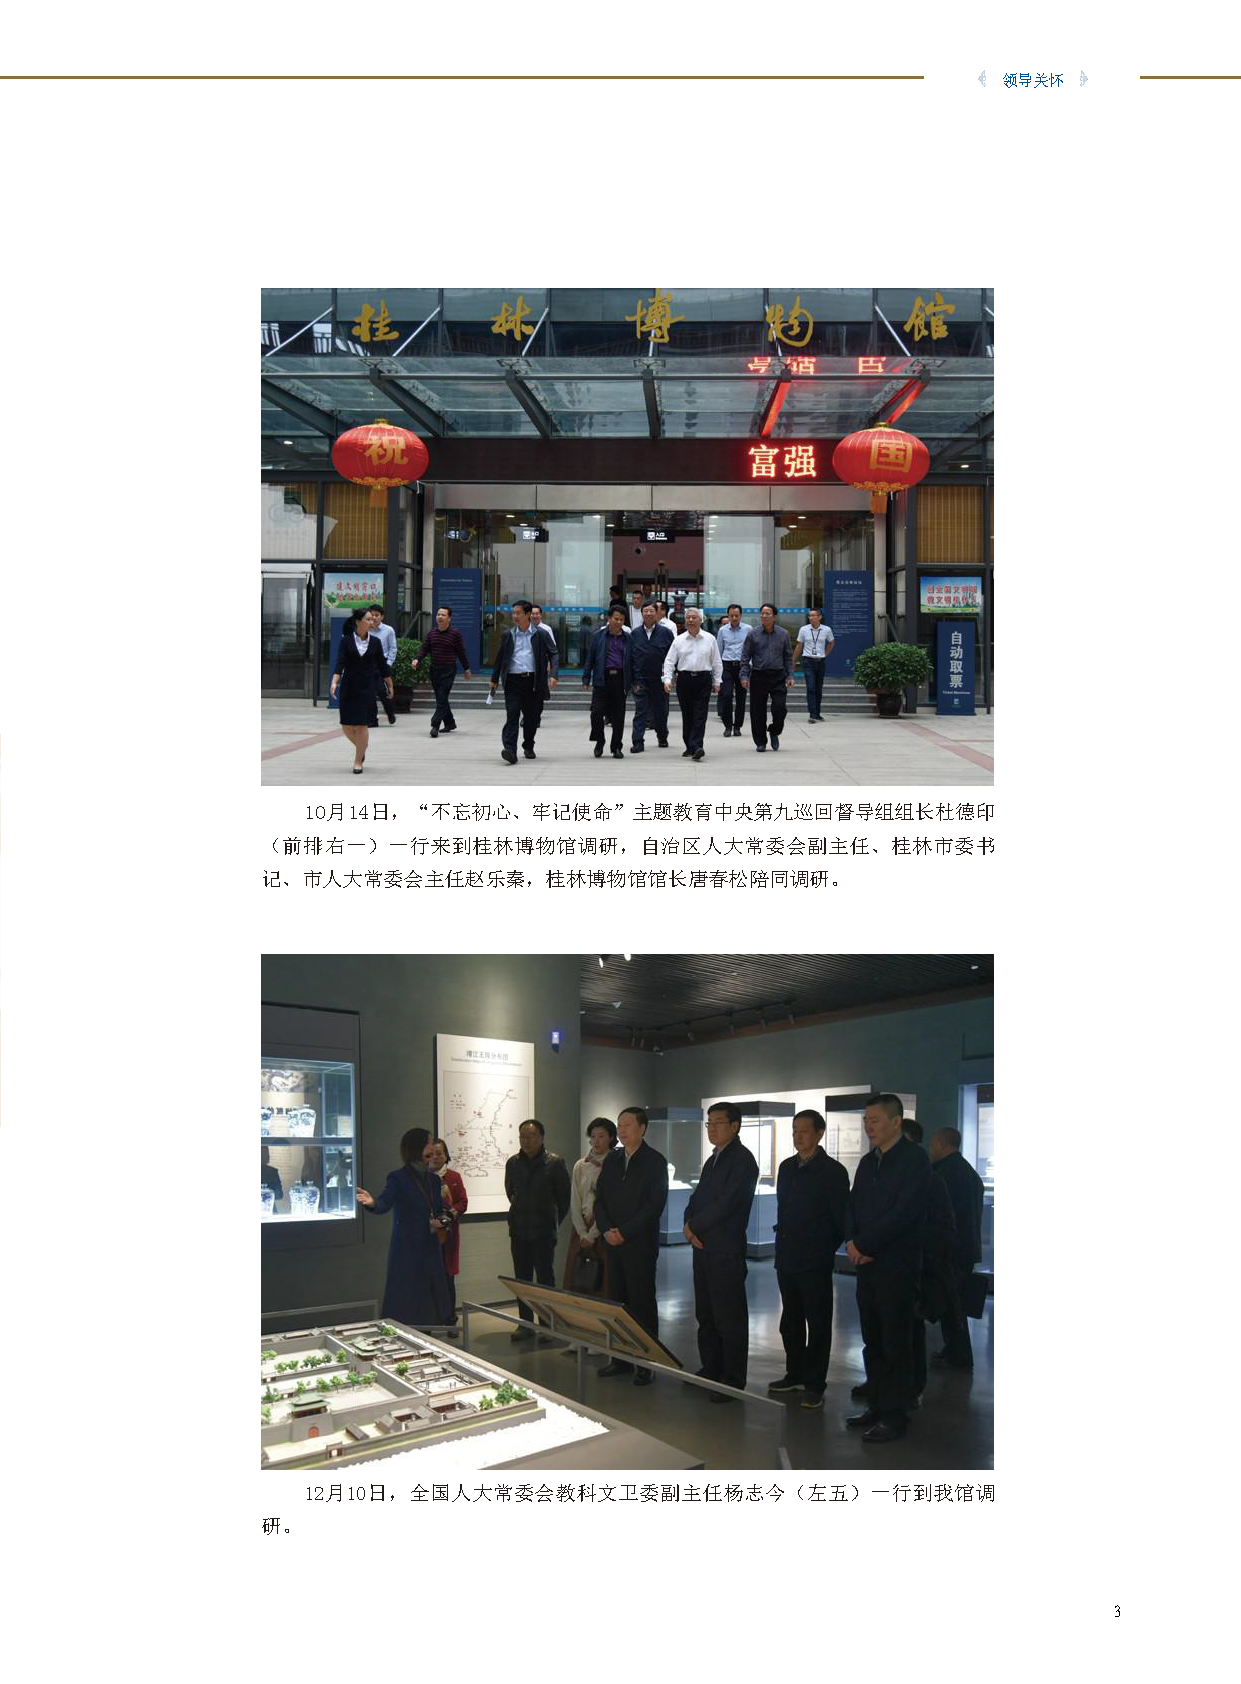 桂林博物馆2019年度报告.pdf_页面_005.png